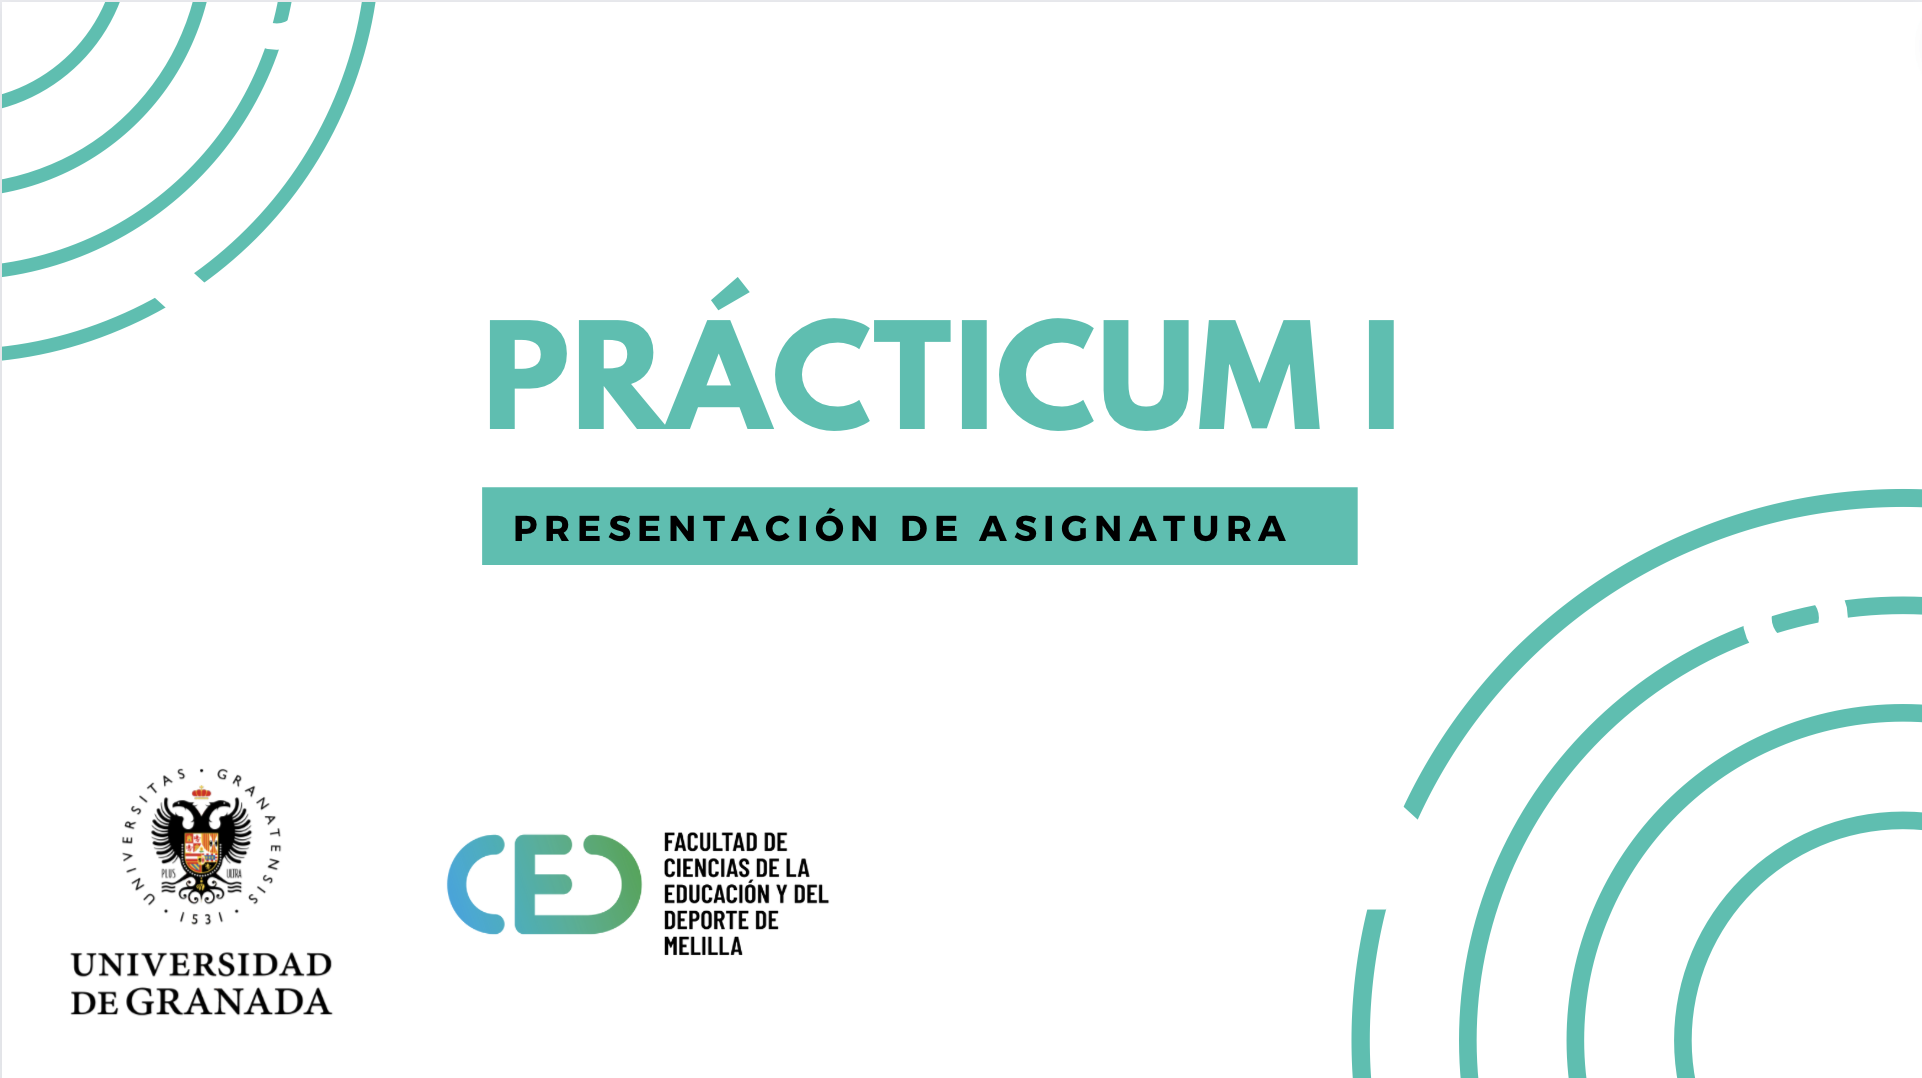 VÍDEO | Prácticum I, presentación de asignatura y contenidos